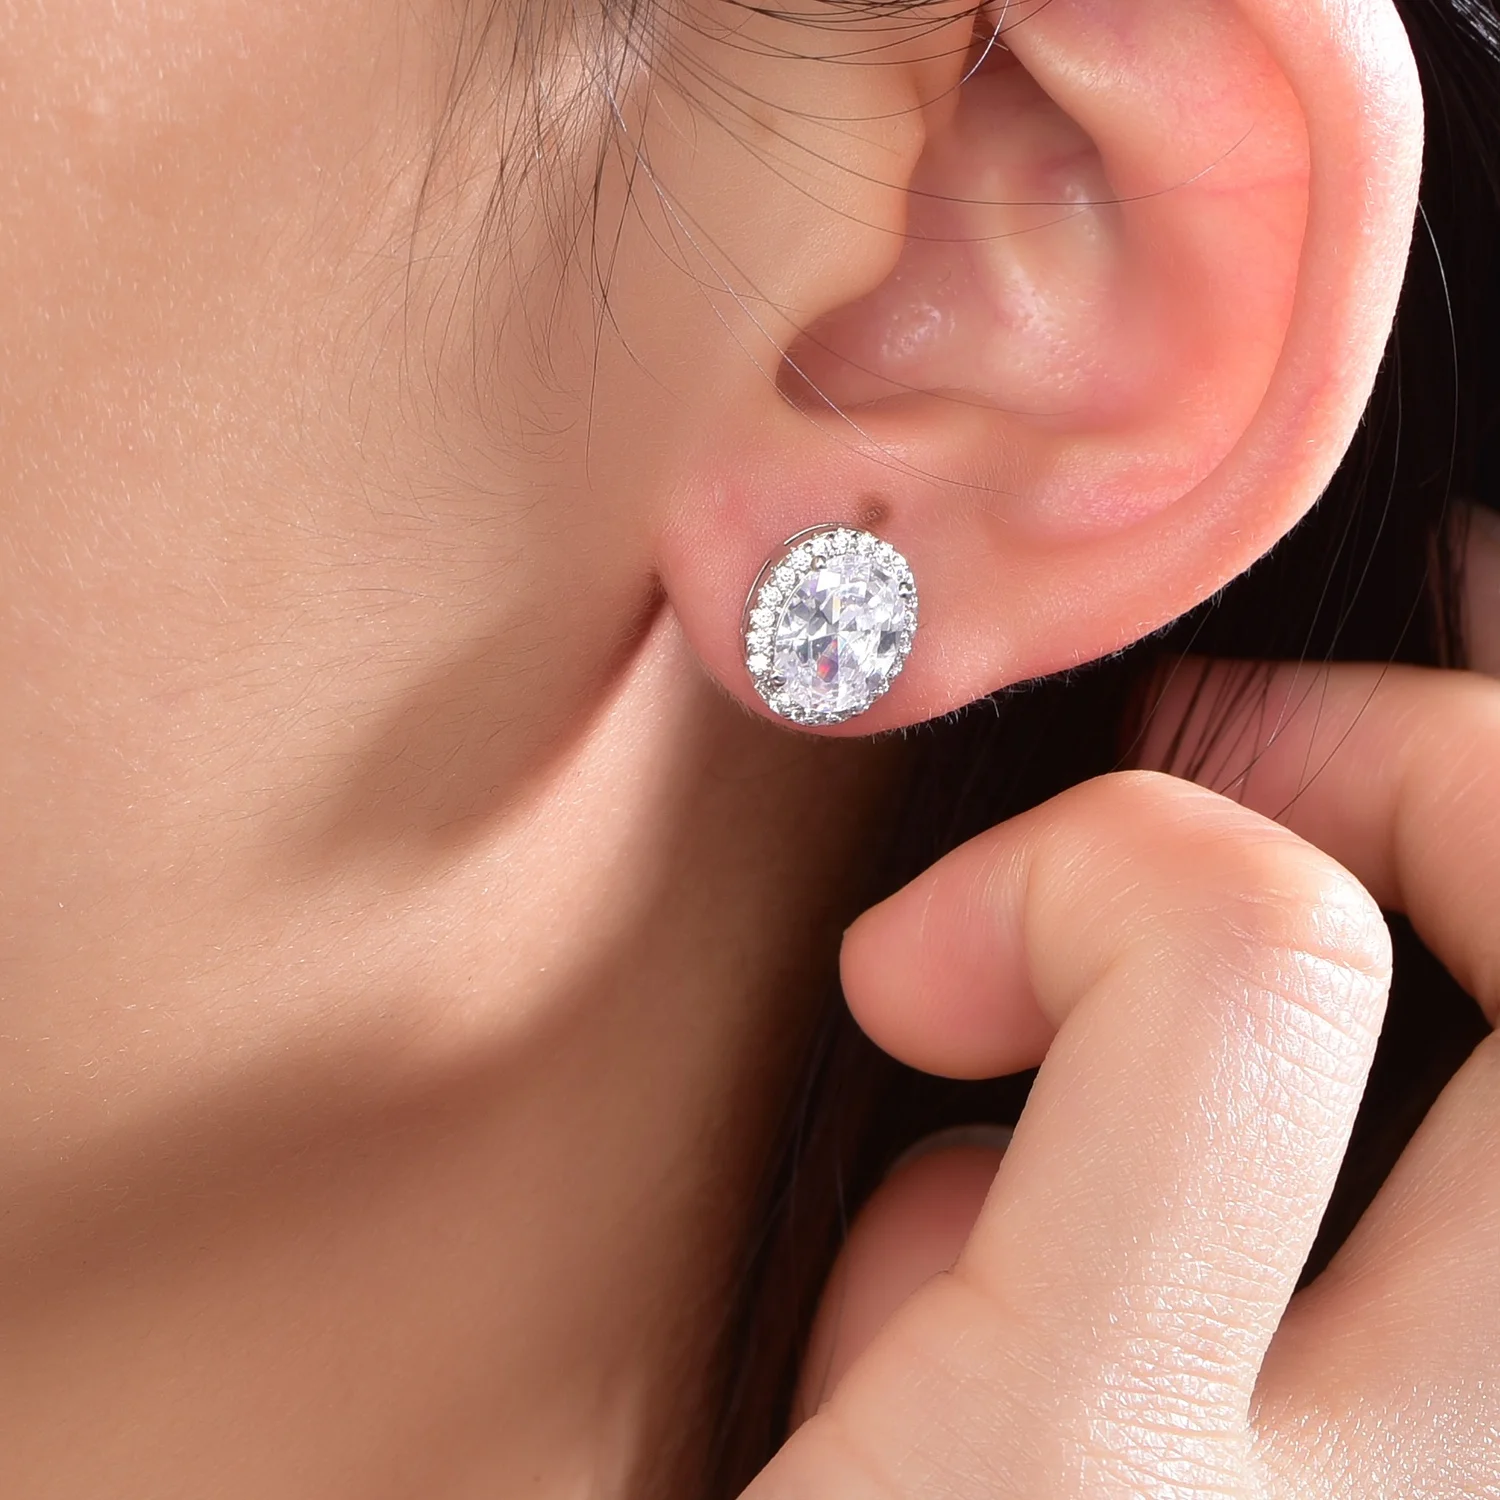 Sterling silver earrings 925 Stud Ear rings Hypoallergenic Cubic Zirconia CZ Earrings 3-8mm Stud Earrings